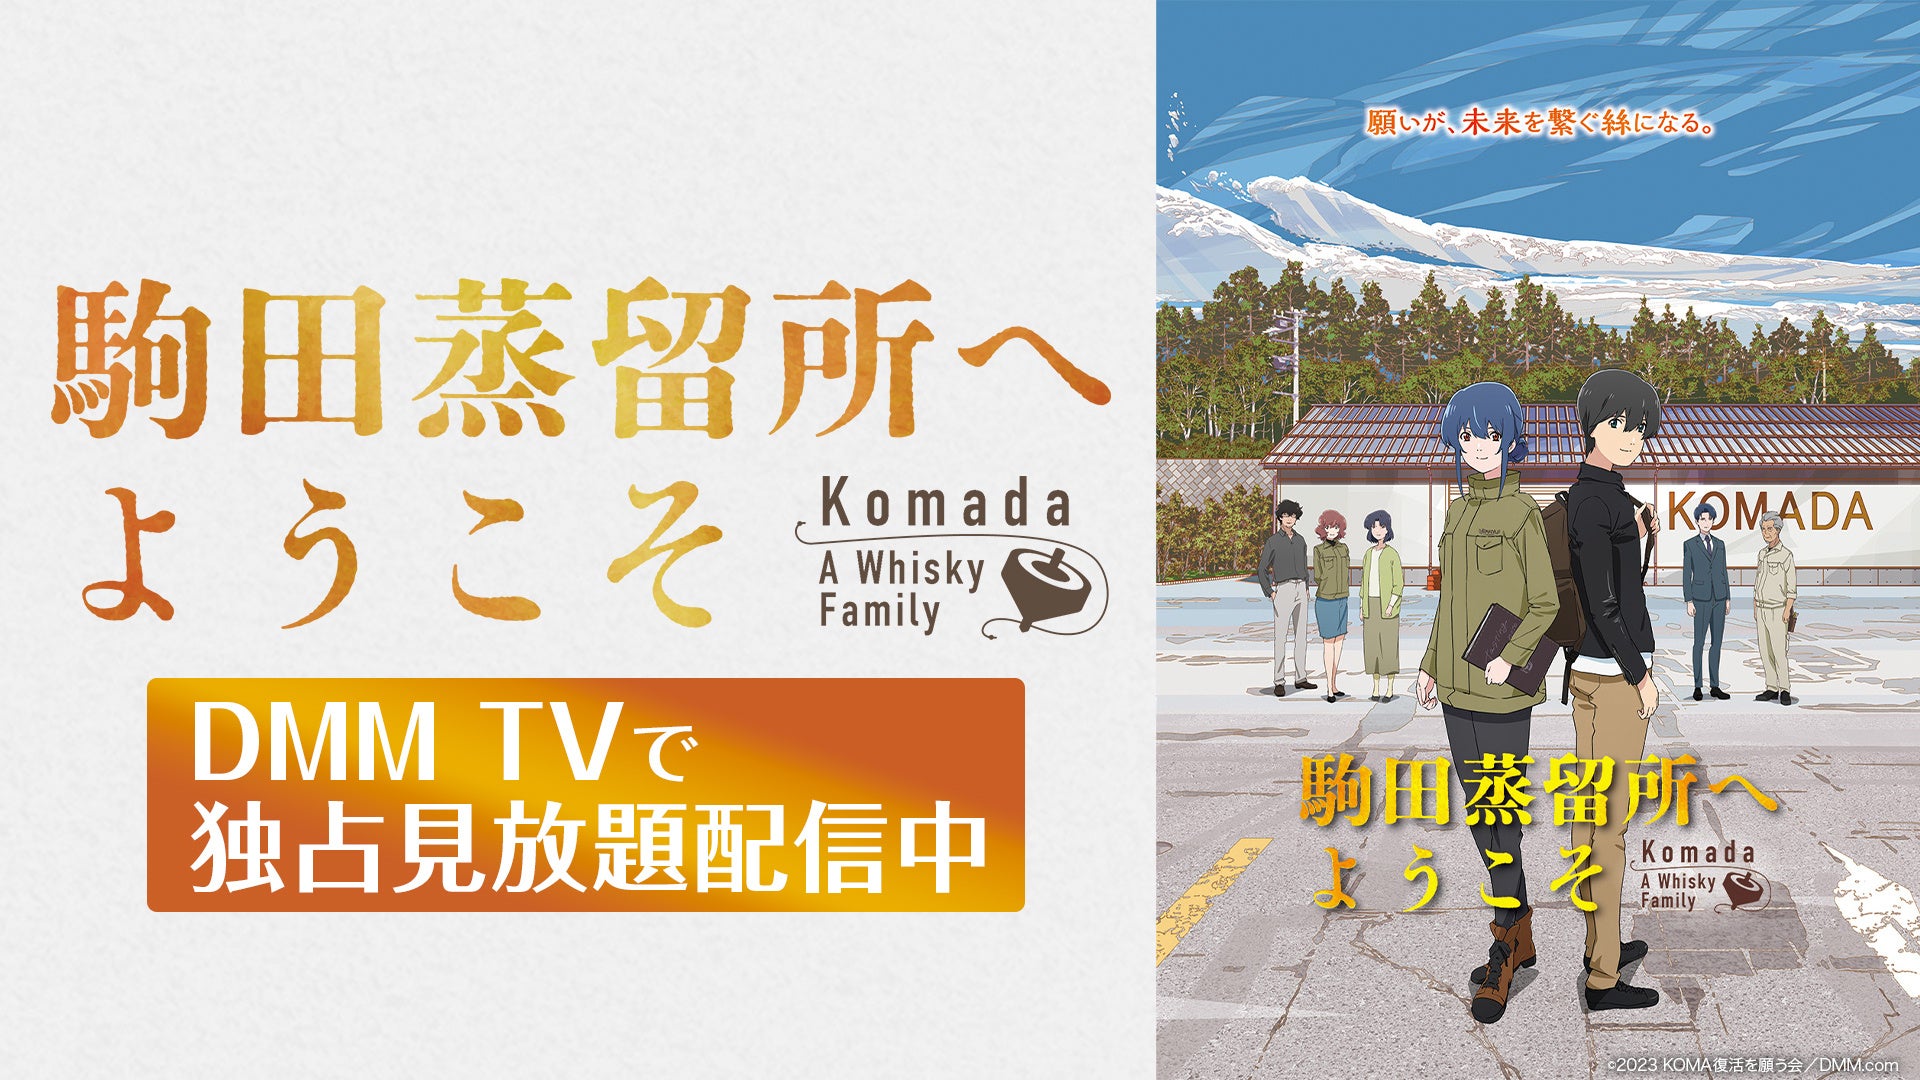 映画『駒田蒸留所へようこそ』4月1日よりDMM TVでの見放題配信を開始